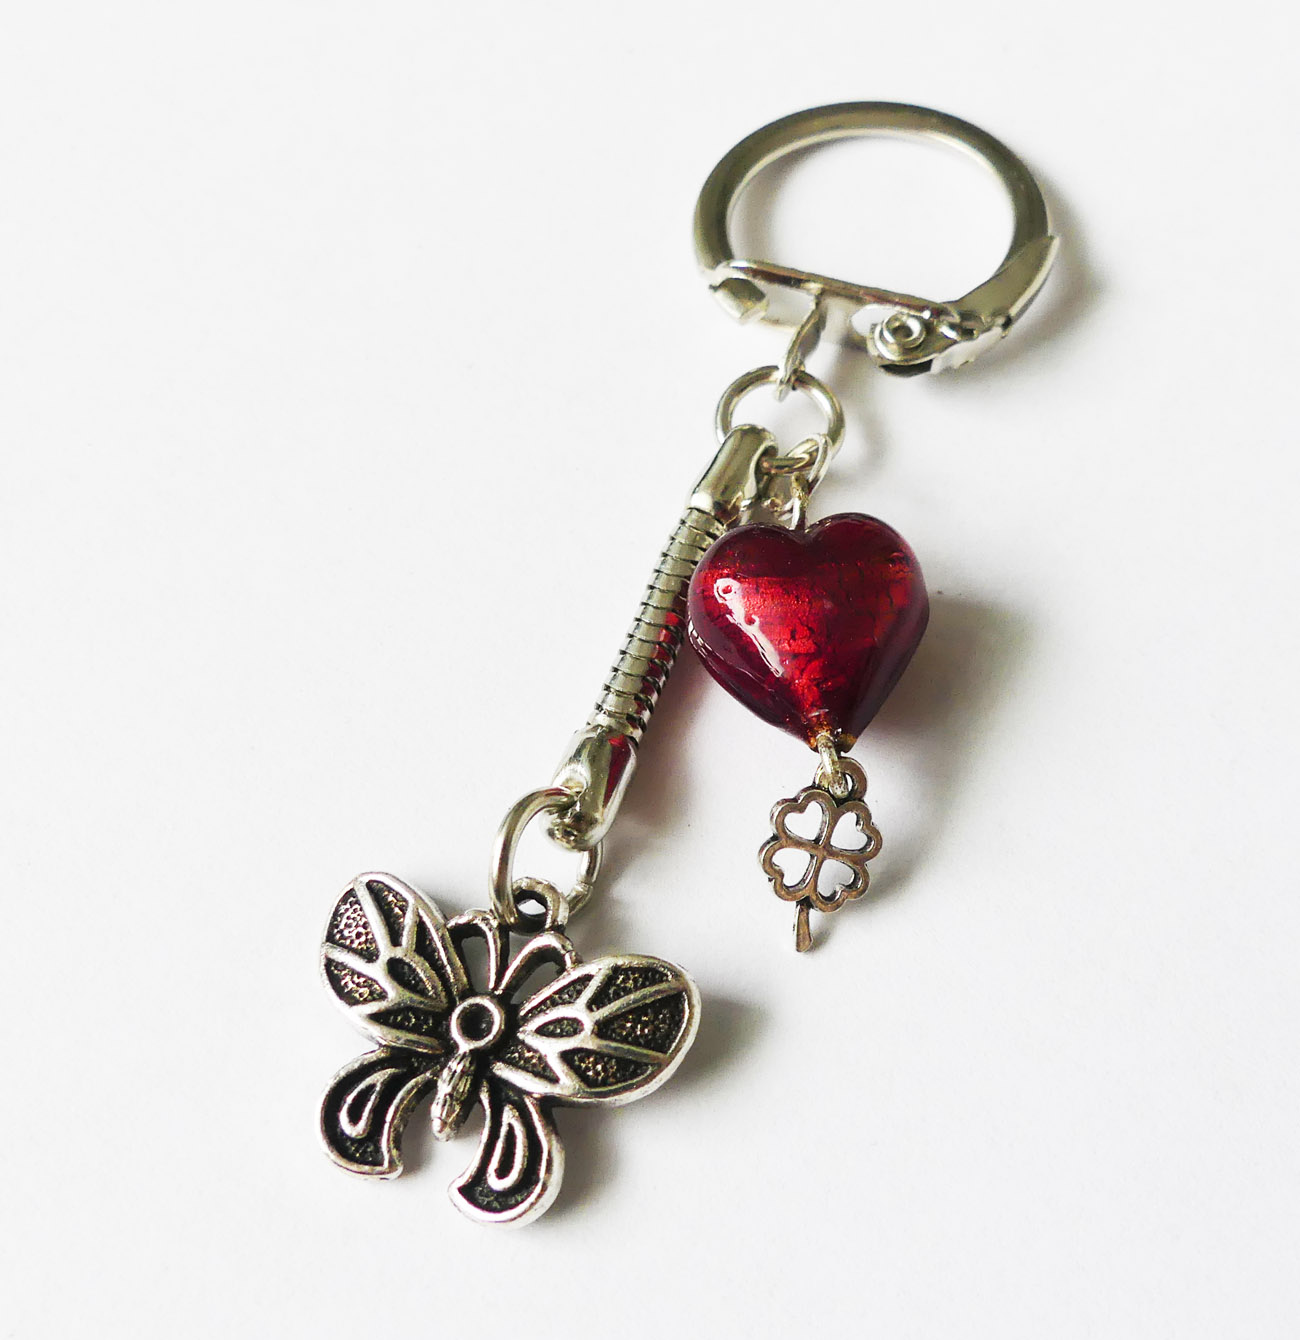 Handmade kľúčenka/prívesok s motýľom a červenou sklenenou korálkou